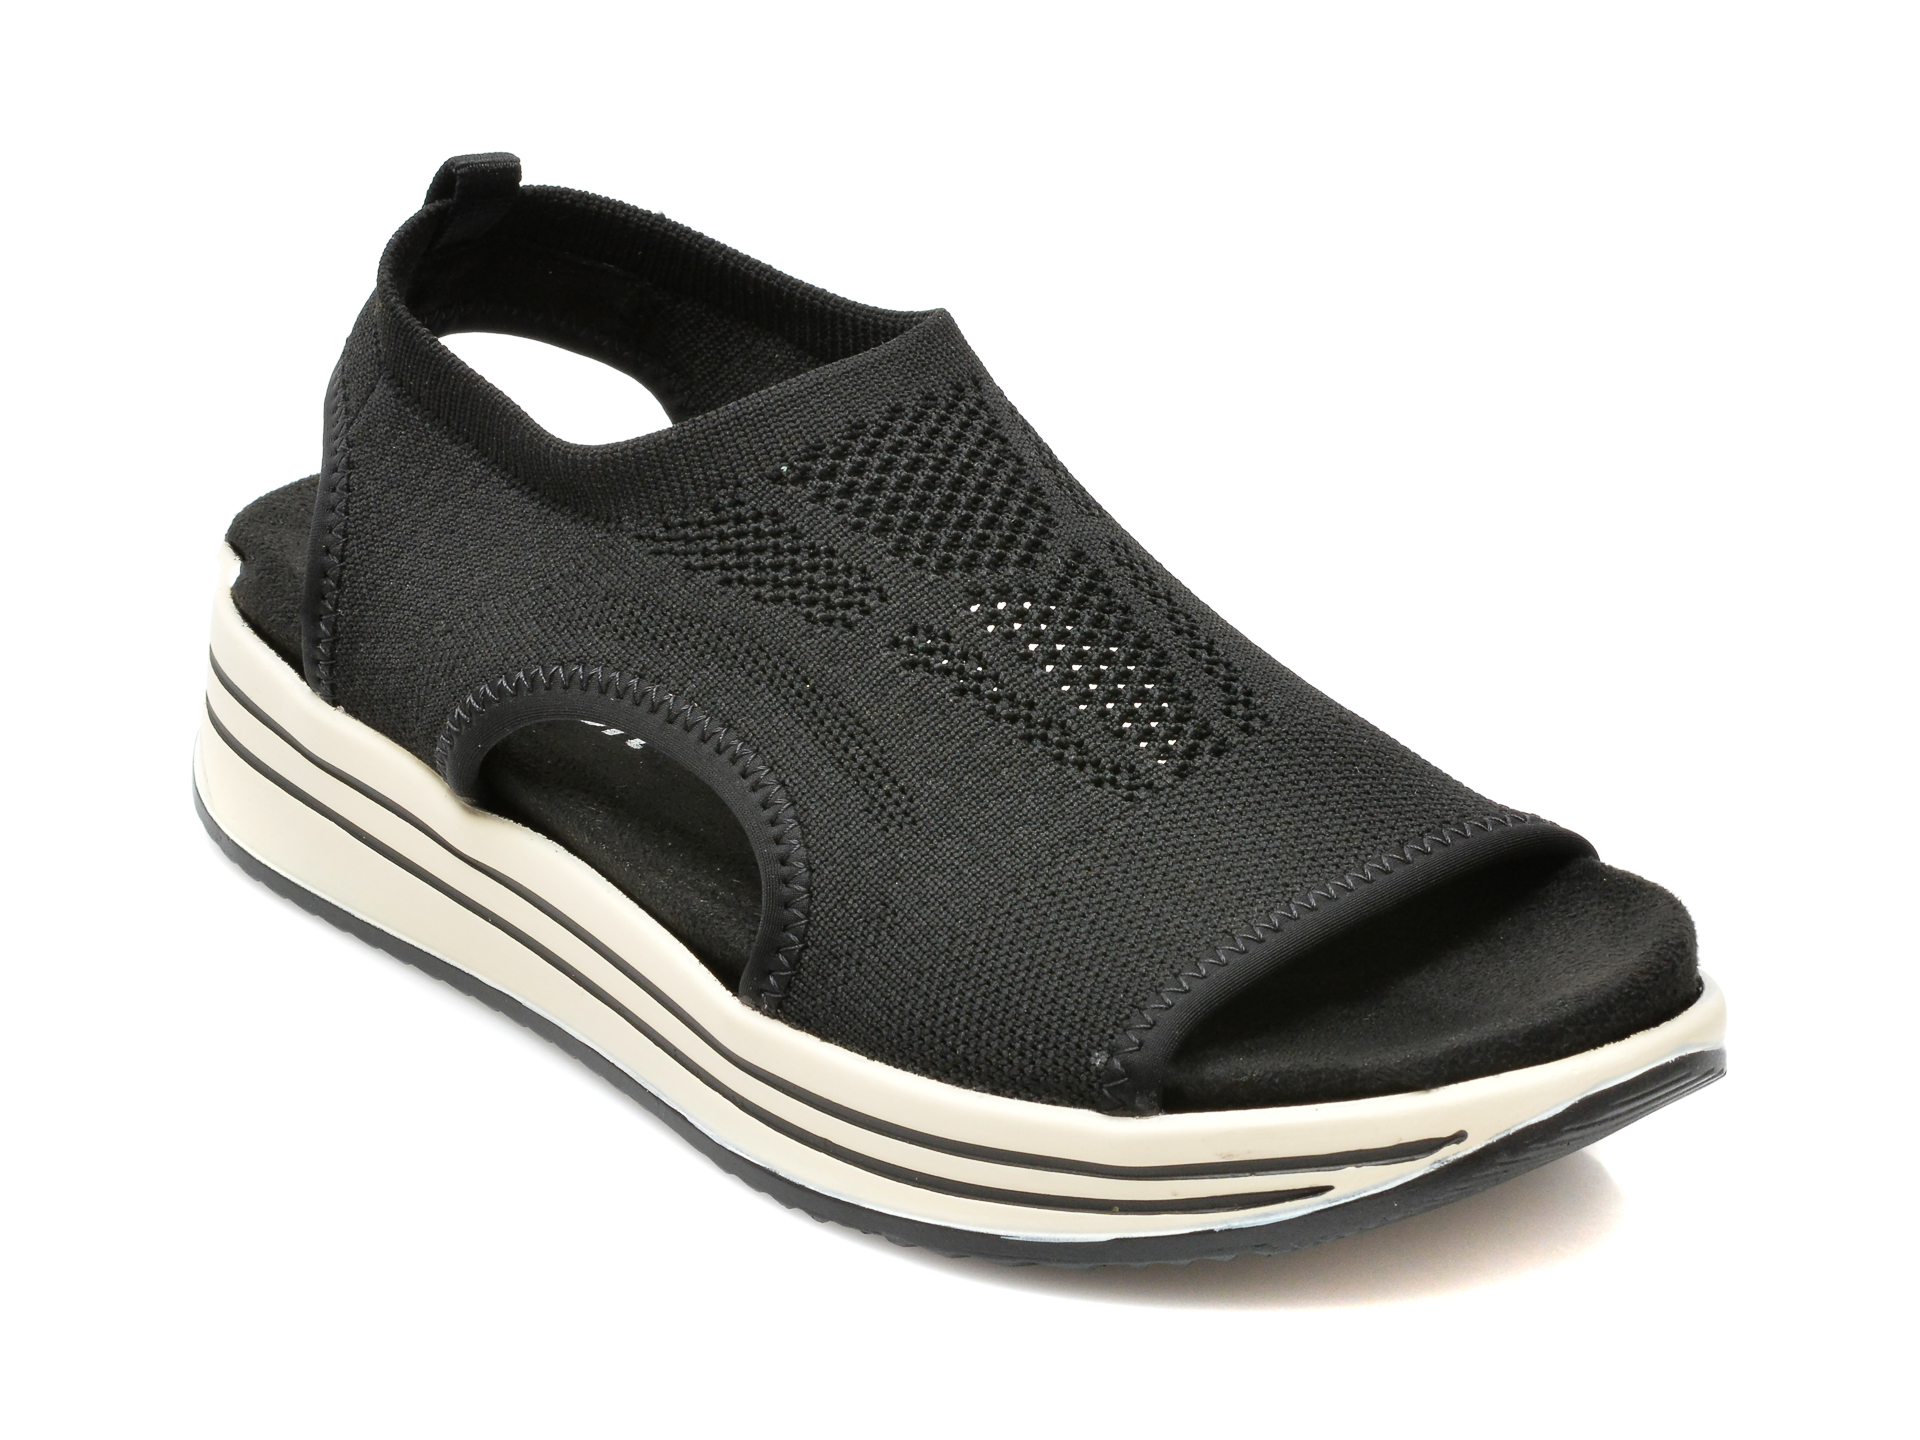 Sandale REMONTE negre, R2955, din material textil Remonte imagine noua